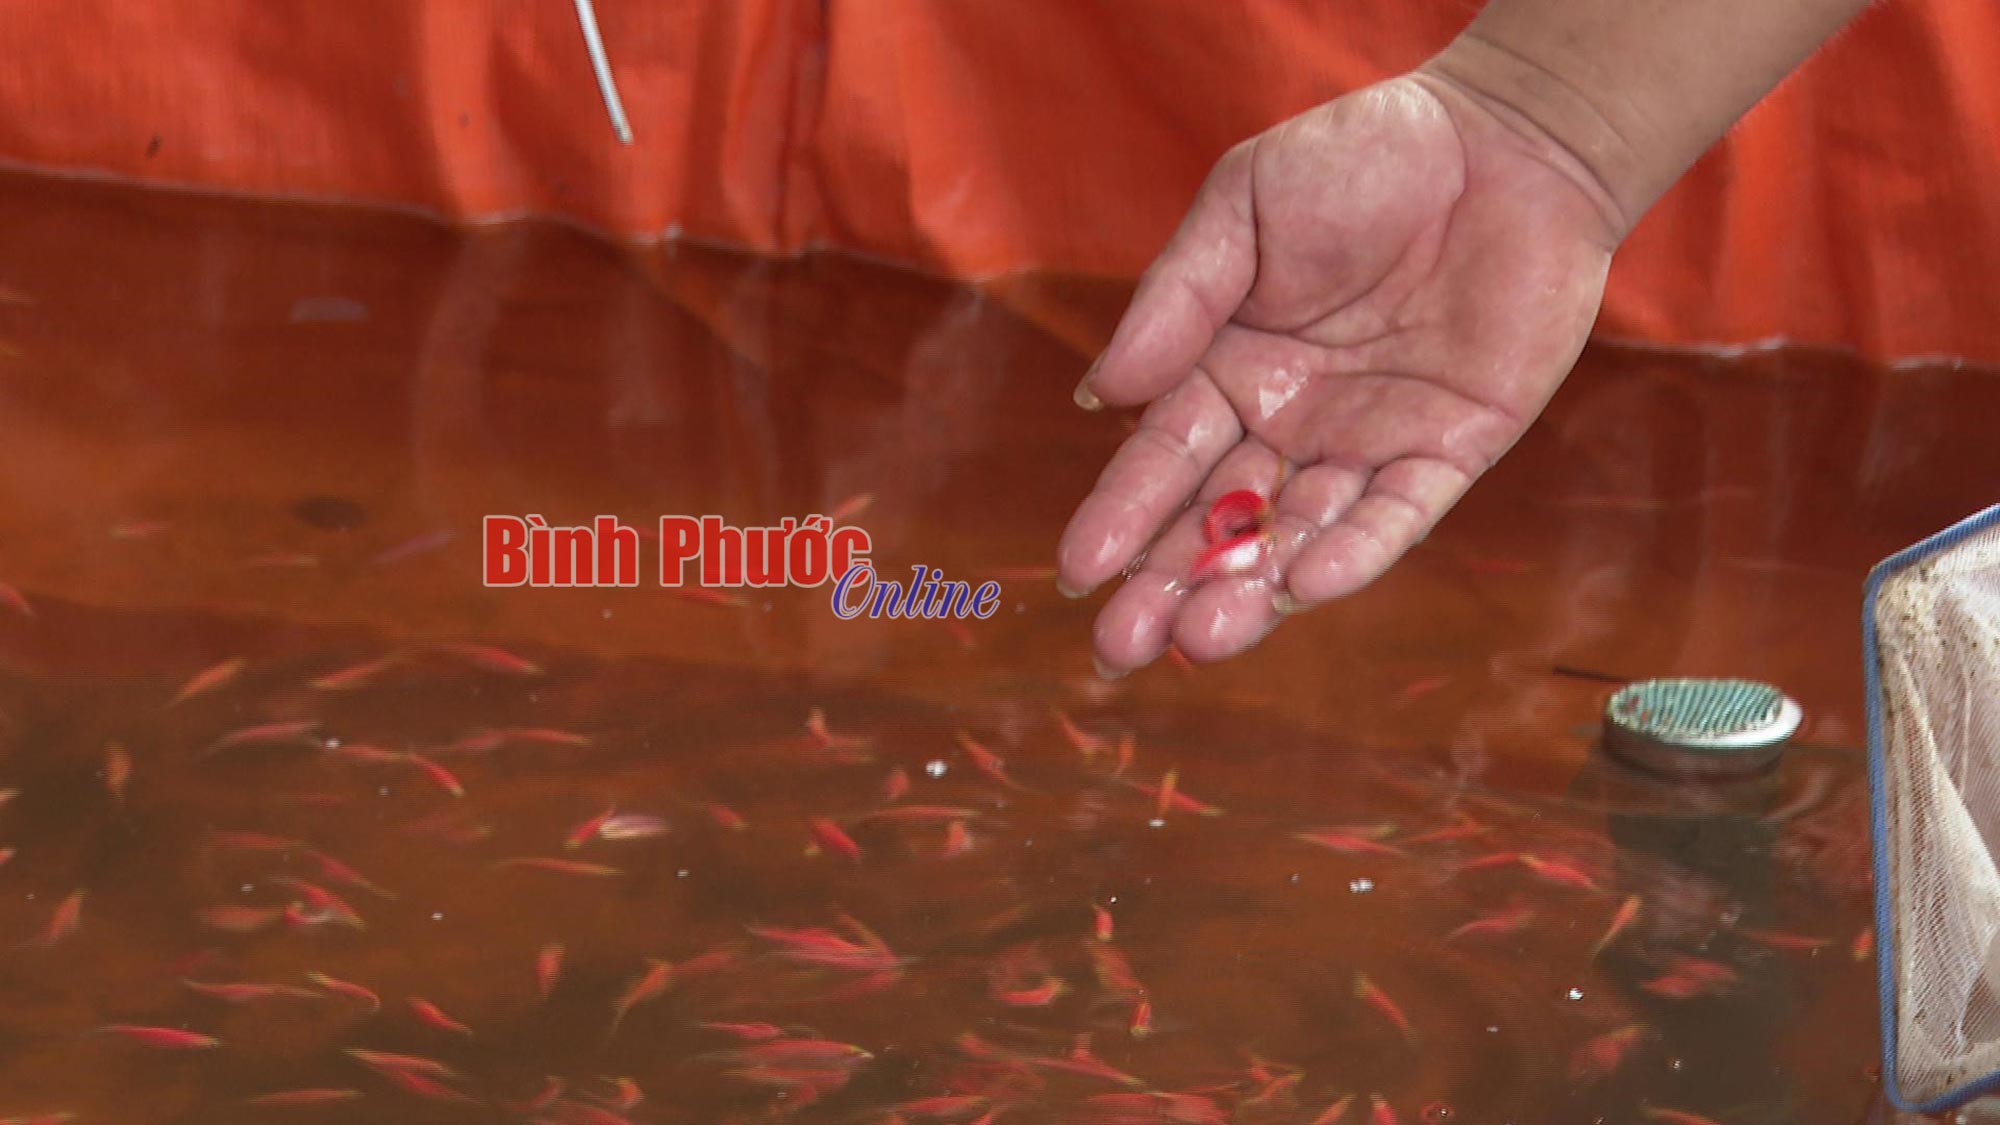 Một anh nông dân Bình Phước làm hồ lót bạt la liệt nuôi thứ cá độc lạ, nhiều người tò mò đến xem - Ảnh 2.